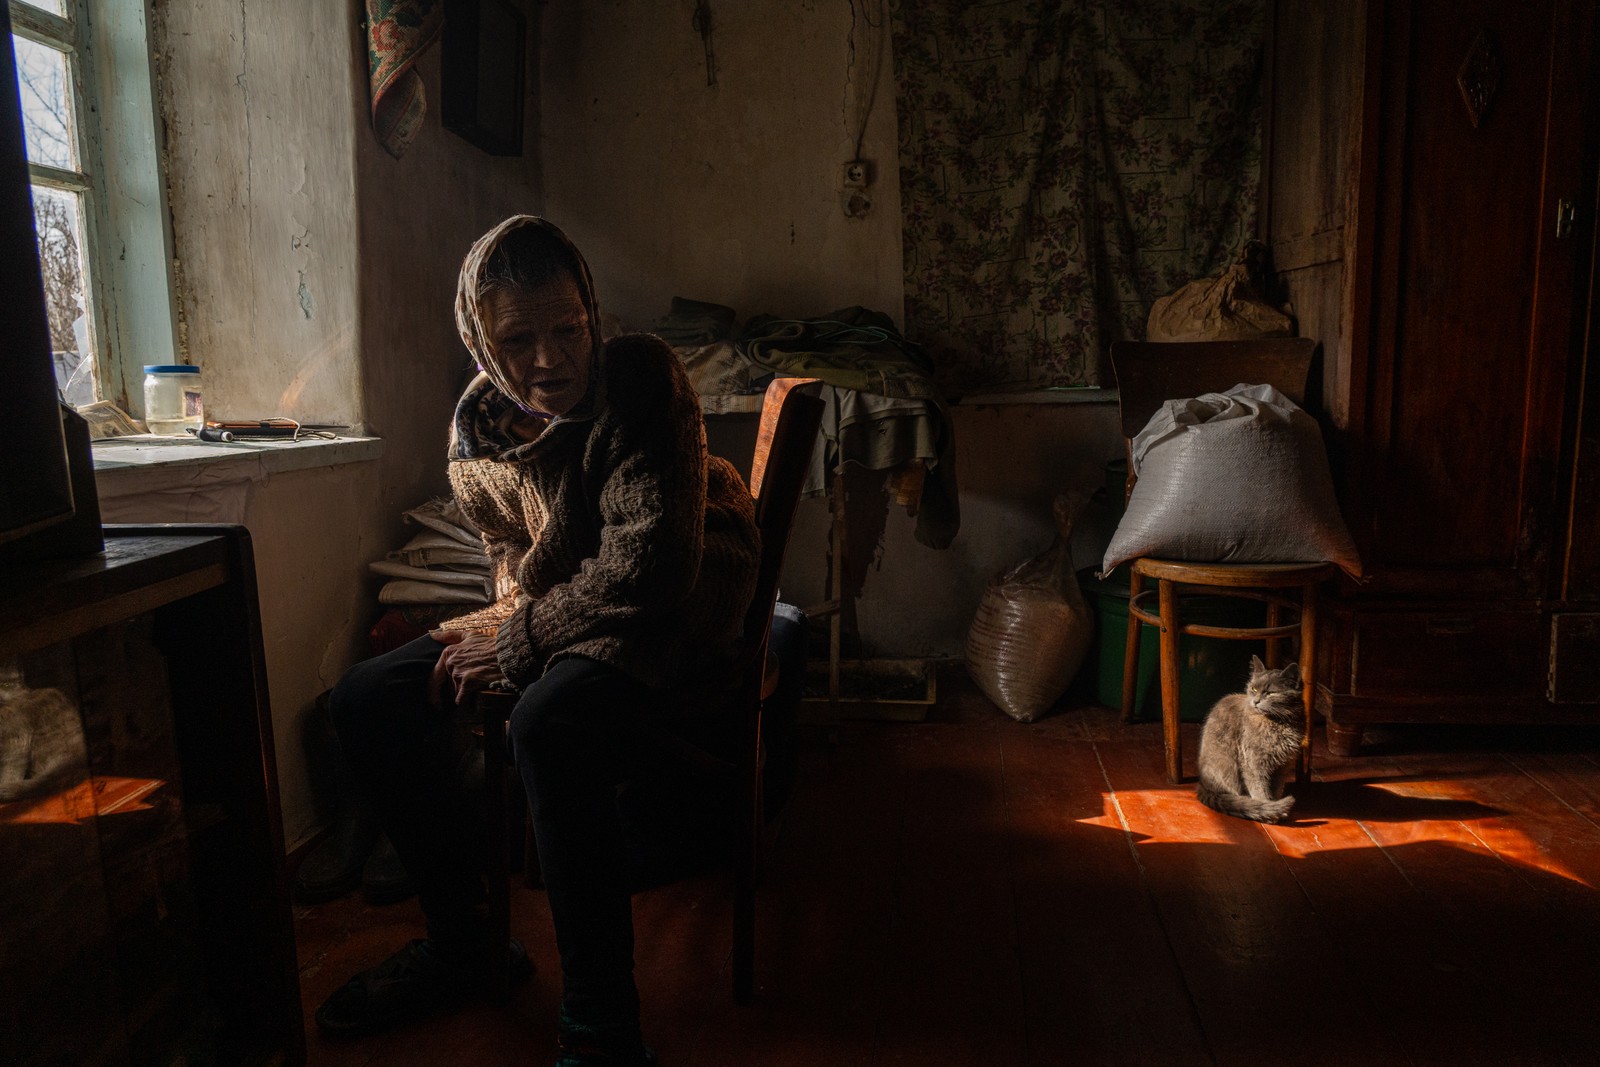 Paraskovya e a sua família decidiram ficar em sua casa mesmo com a guerra chegando cada vez mais perto de sua cidade semi-destruída. A senhora diz estar com medo das explosões constantes, mas conta ter ainda mais medo de se tornar uma refugiada. Foto tirada em Ocheretyno, Oblast de Donetsk, Ucrânia — Foto: Yan Boechat